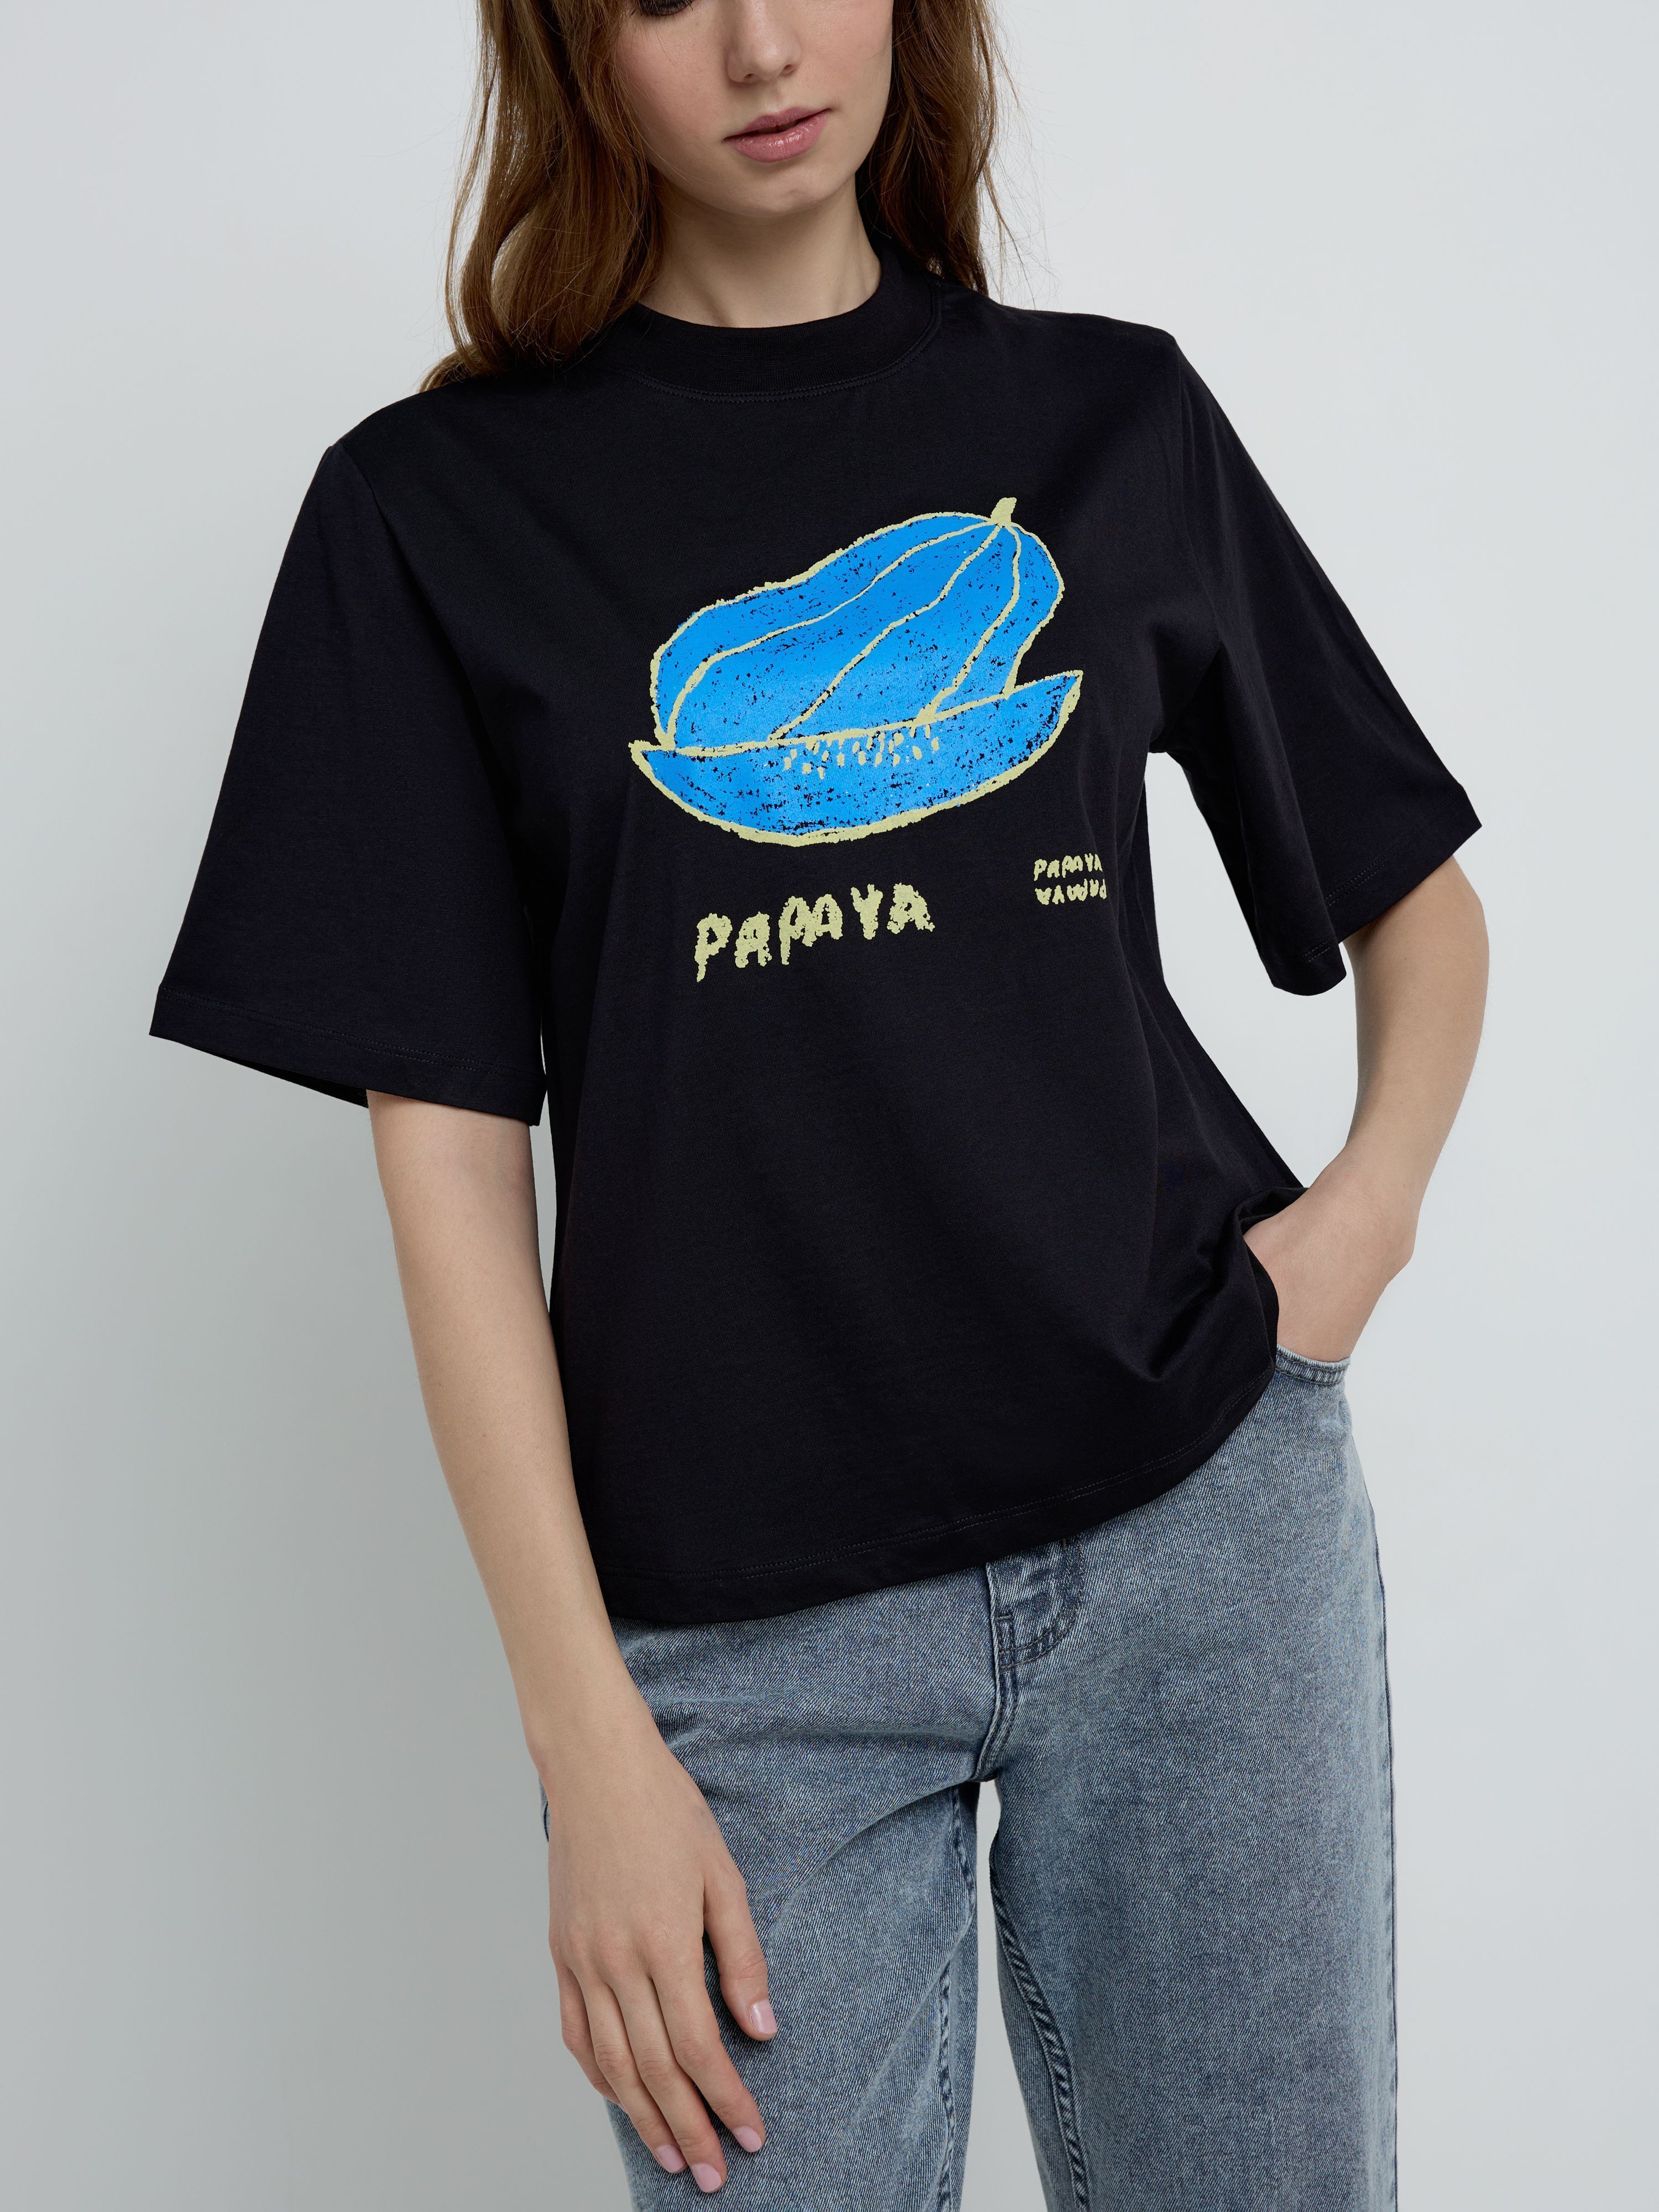 Свободная футболка из хлопка с рисунком «Papaya» LD 2099 Conte ⭐️, цвет white, размер 170-100/xl